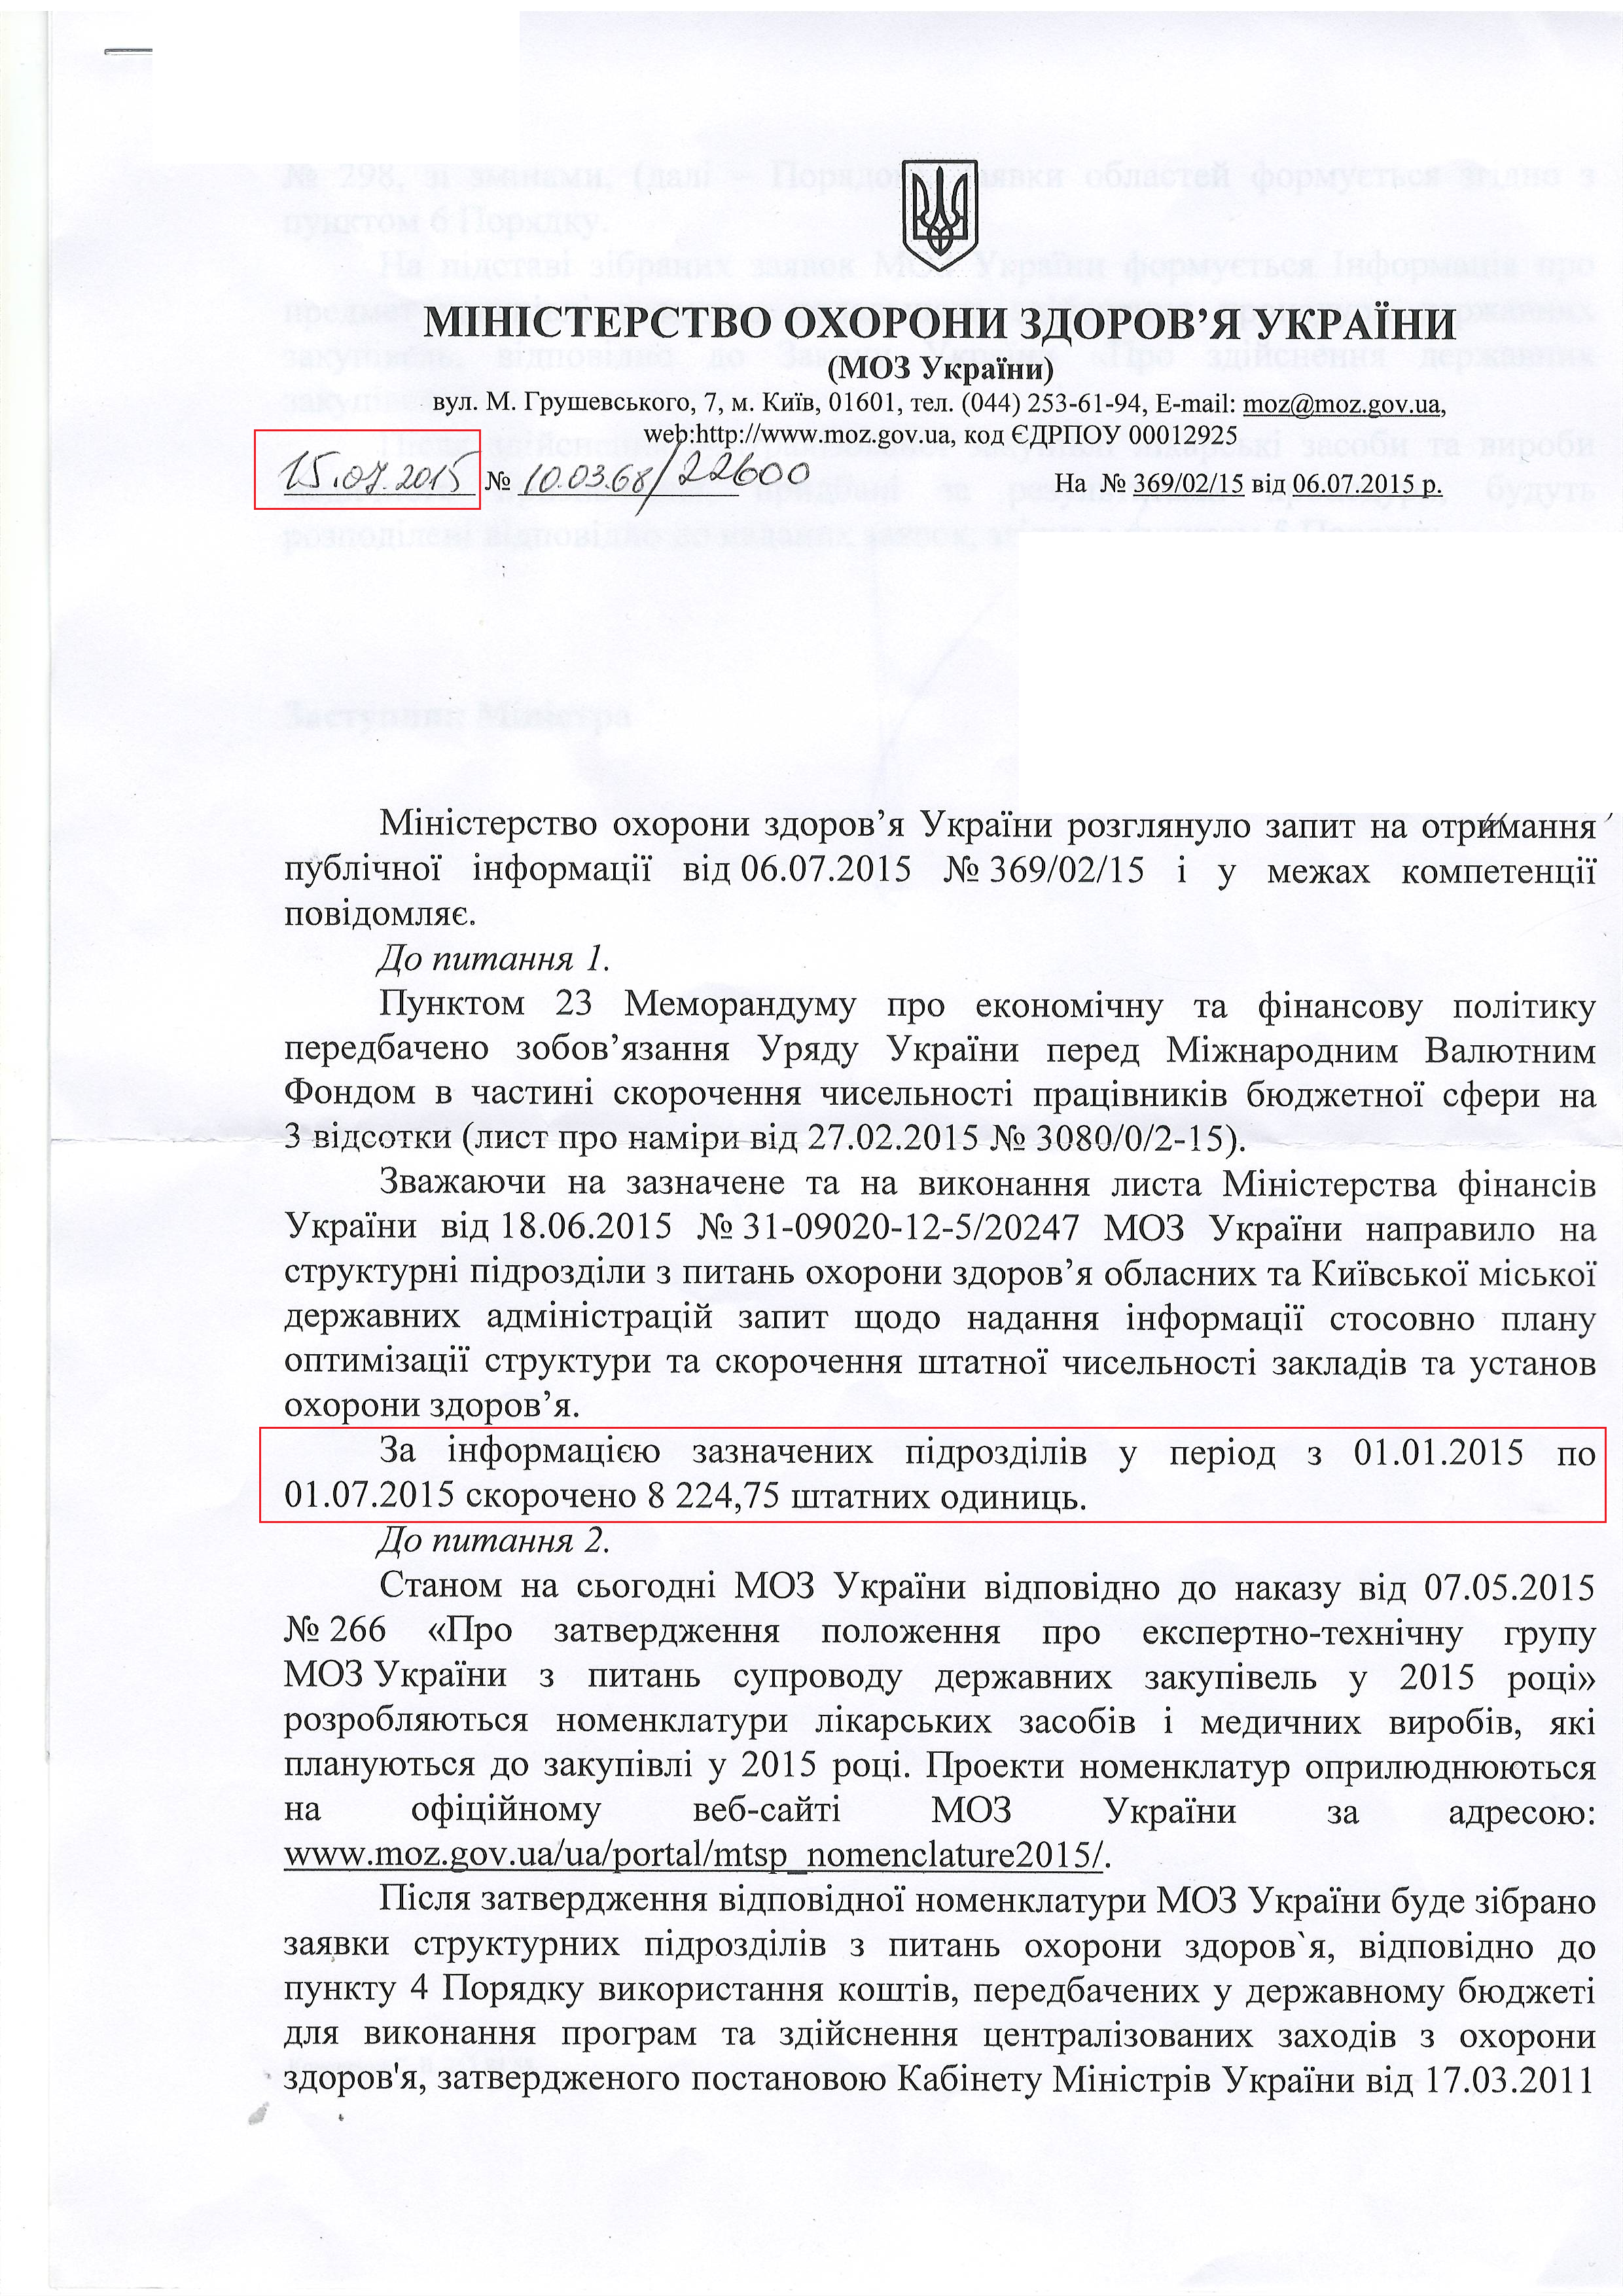 Лист міністерства охорони здоров'я України від 15 липня 2015 року